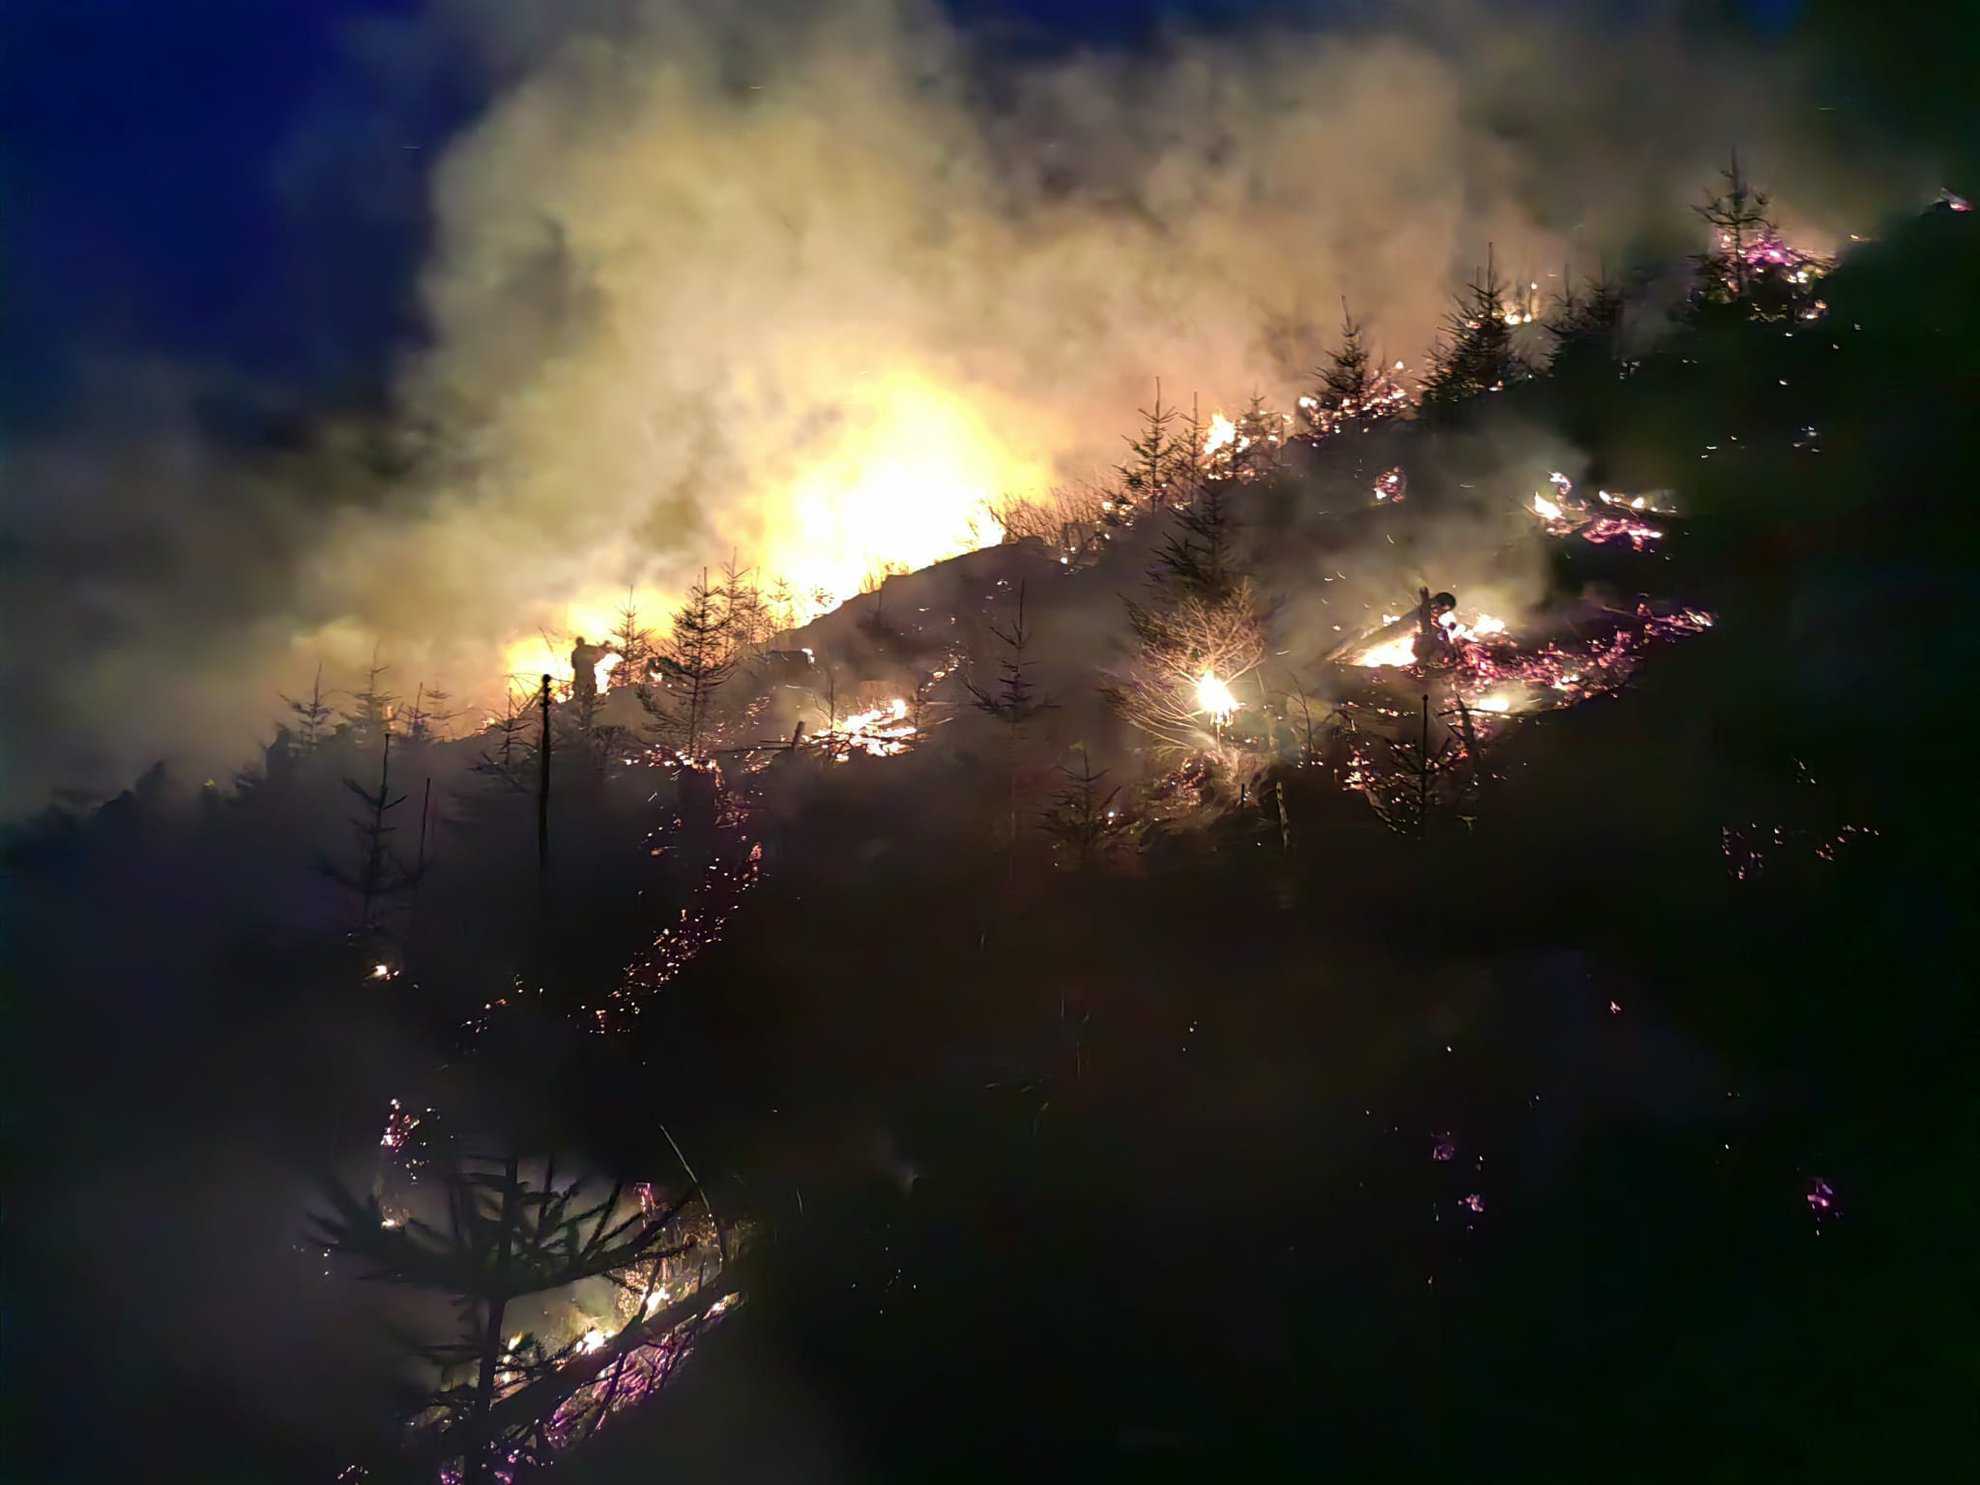 arde pădurea în munții făgăraș. misiune aproape imposibilă pentru pompieri (video)